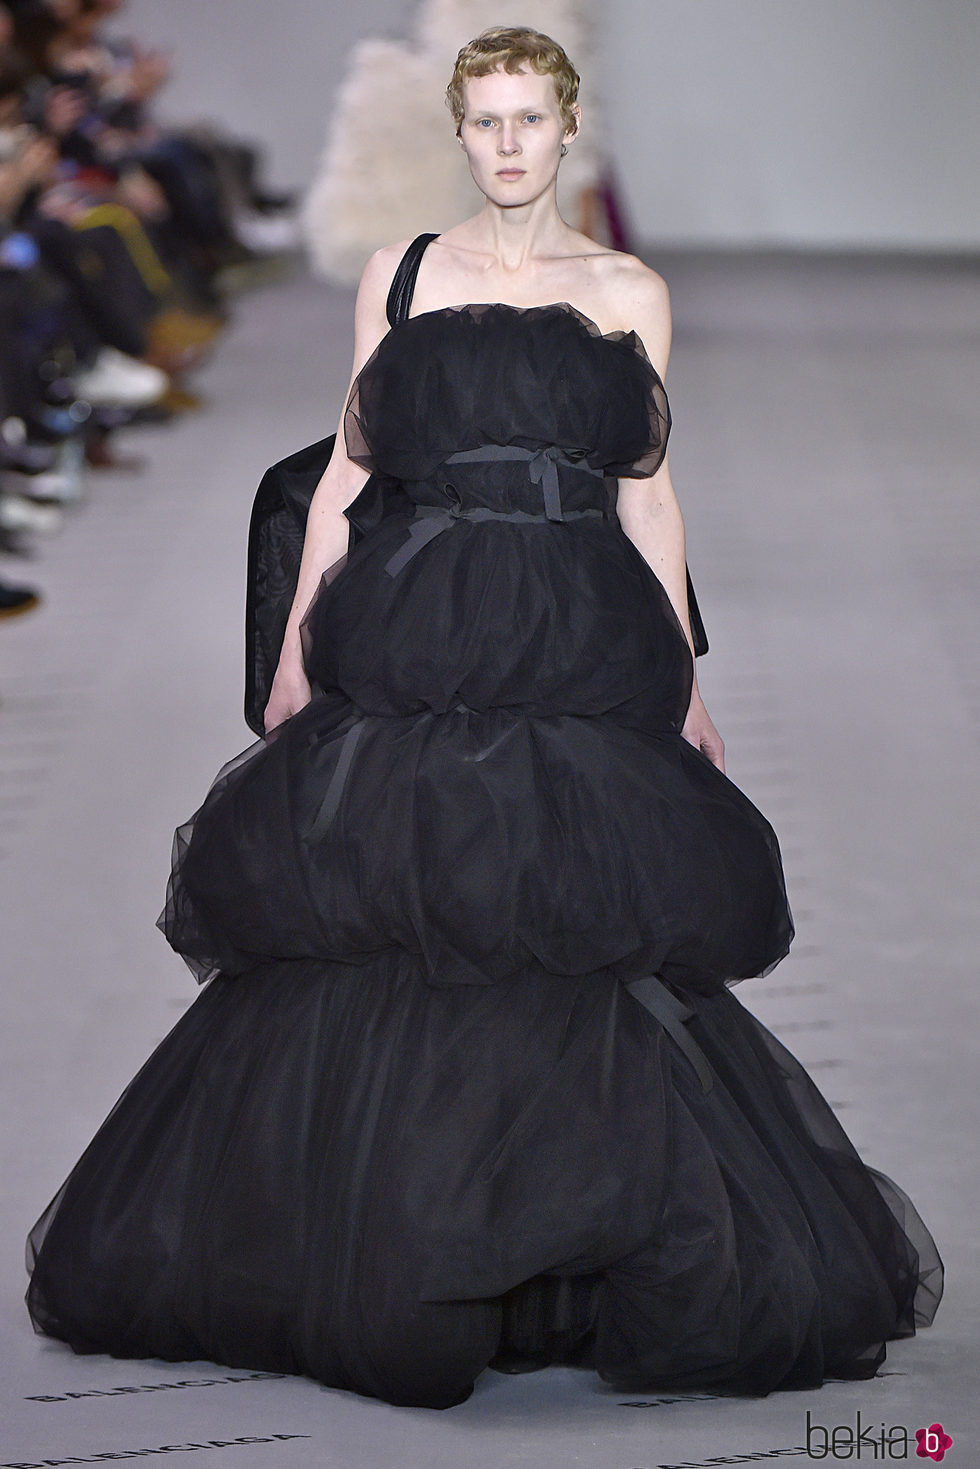 Vestido negro voluminoso de la colección otoño/invierno 2017/2018 de Balenciaga en Paris Fashion Week